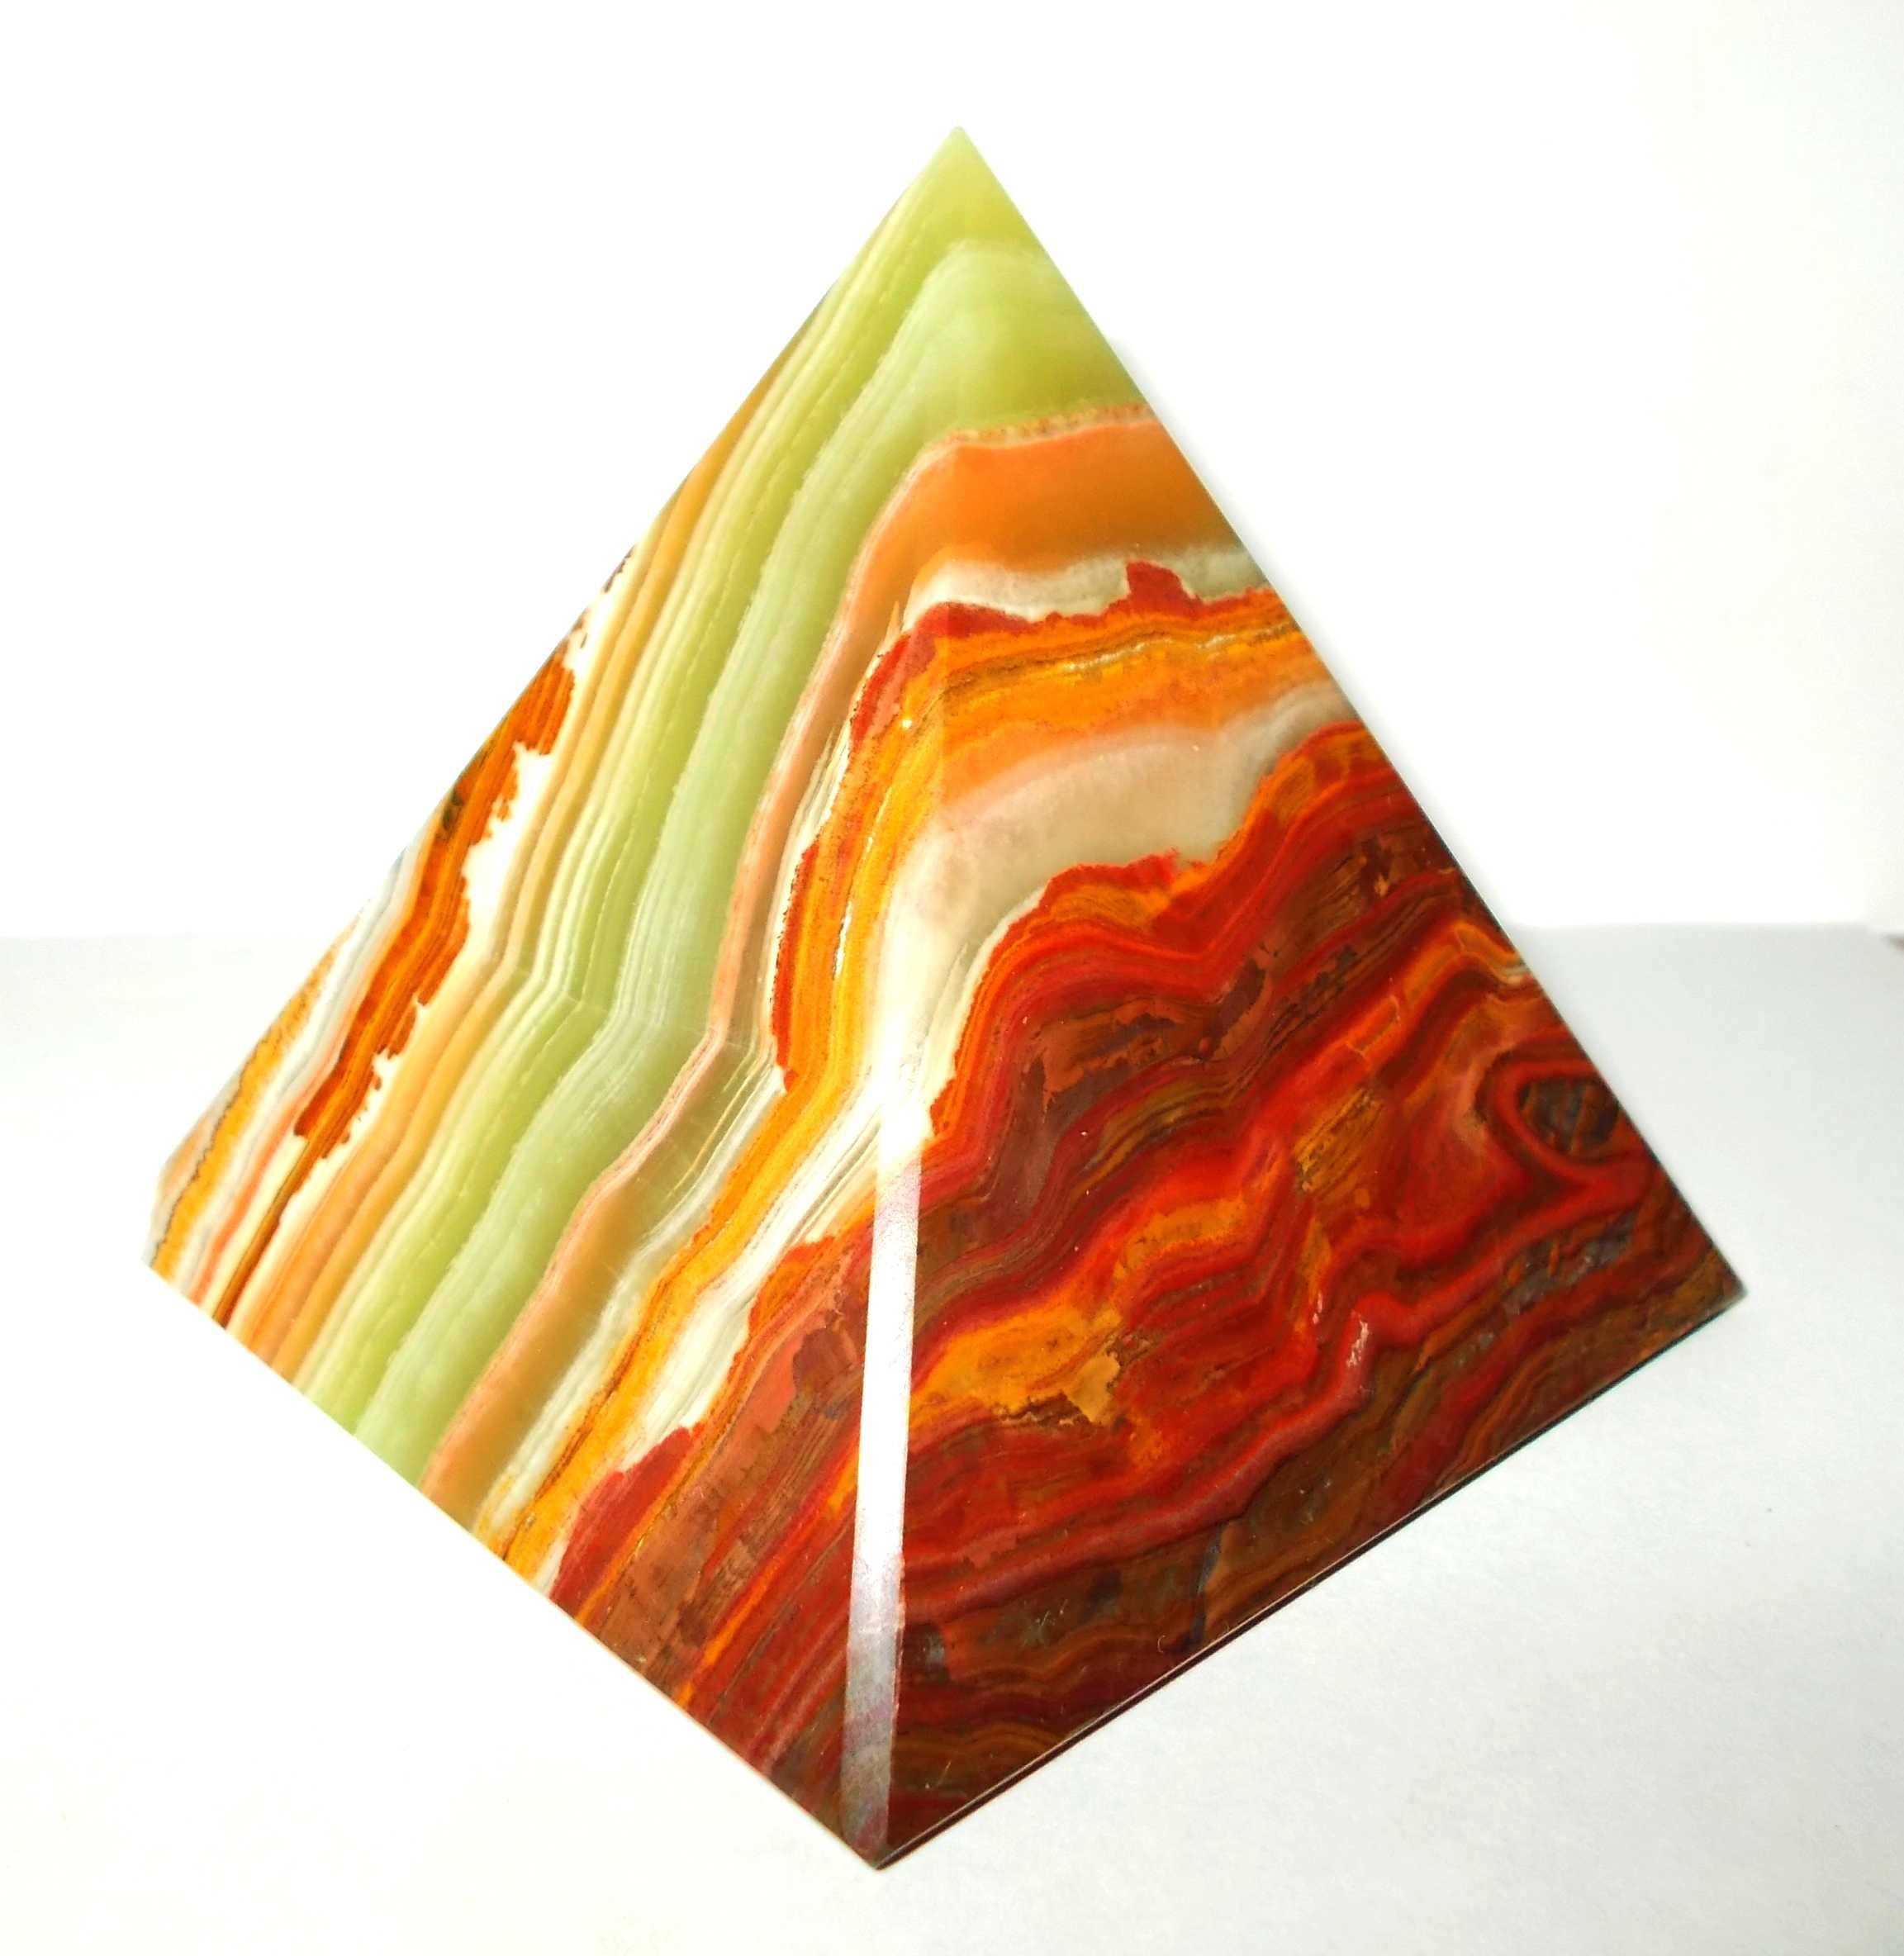 Kamienna piramida - onyks pakistański (7,5 cm) - WYJĄTKOWA